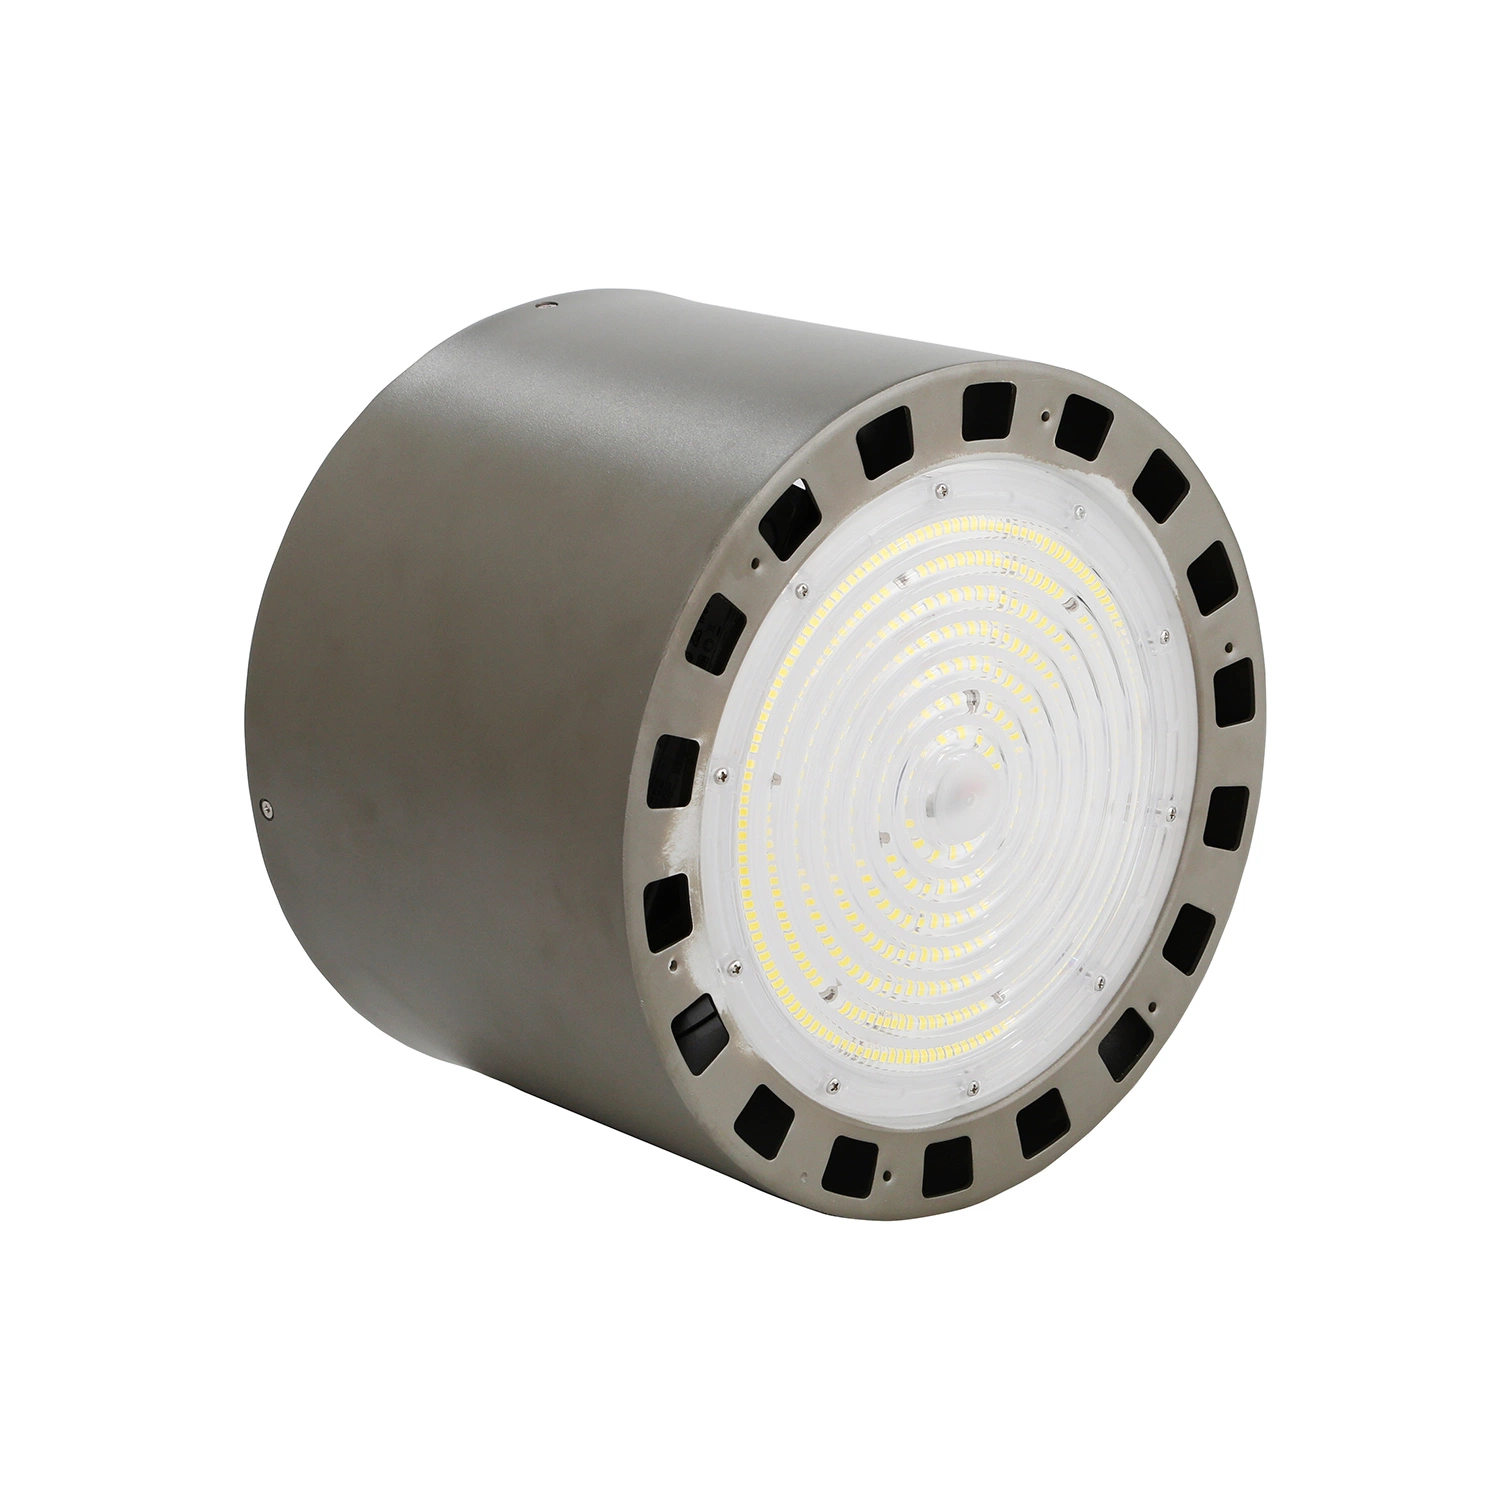 ضوء LED عالي Bay بقوة 150 لومن/واط - حل إضاءة مثالية للمستودعات مانع للتوهج من Honeycomb